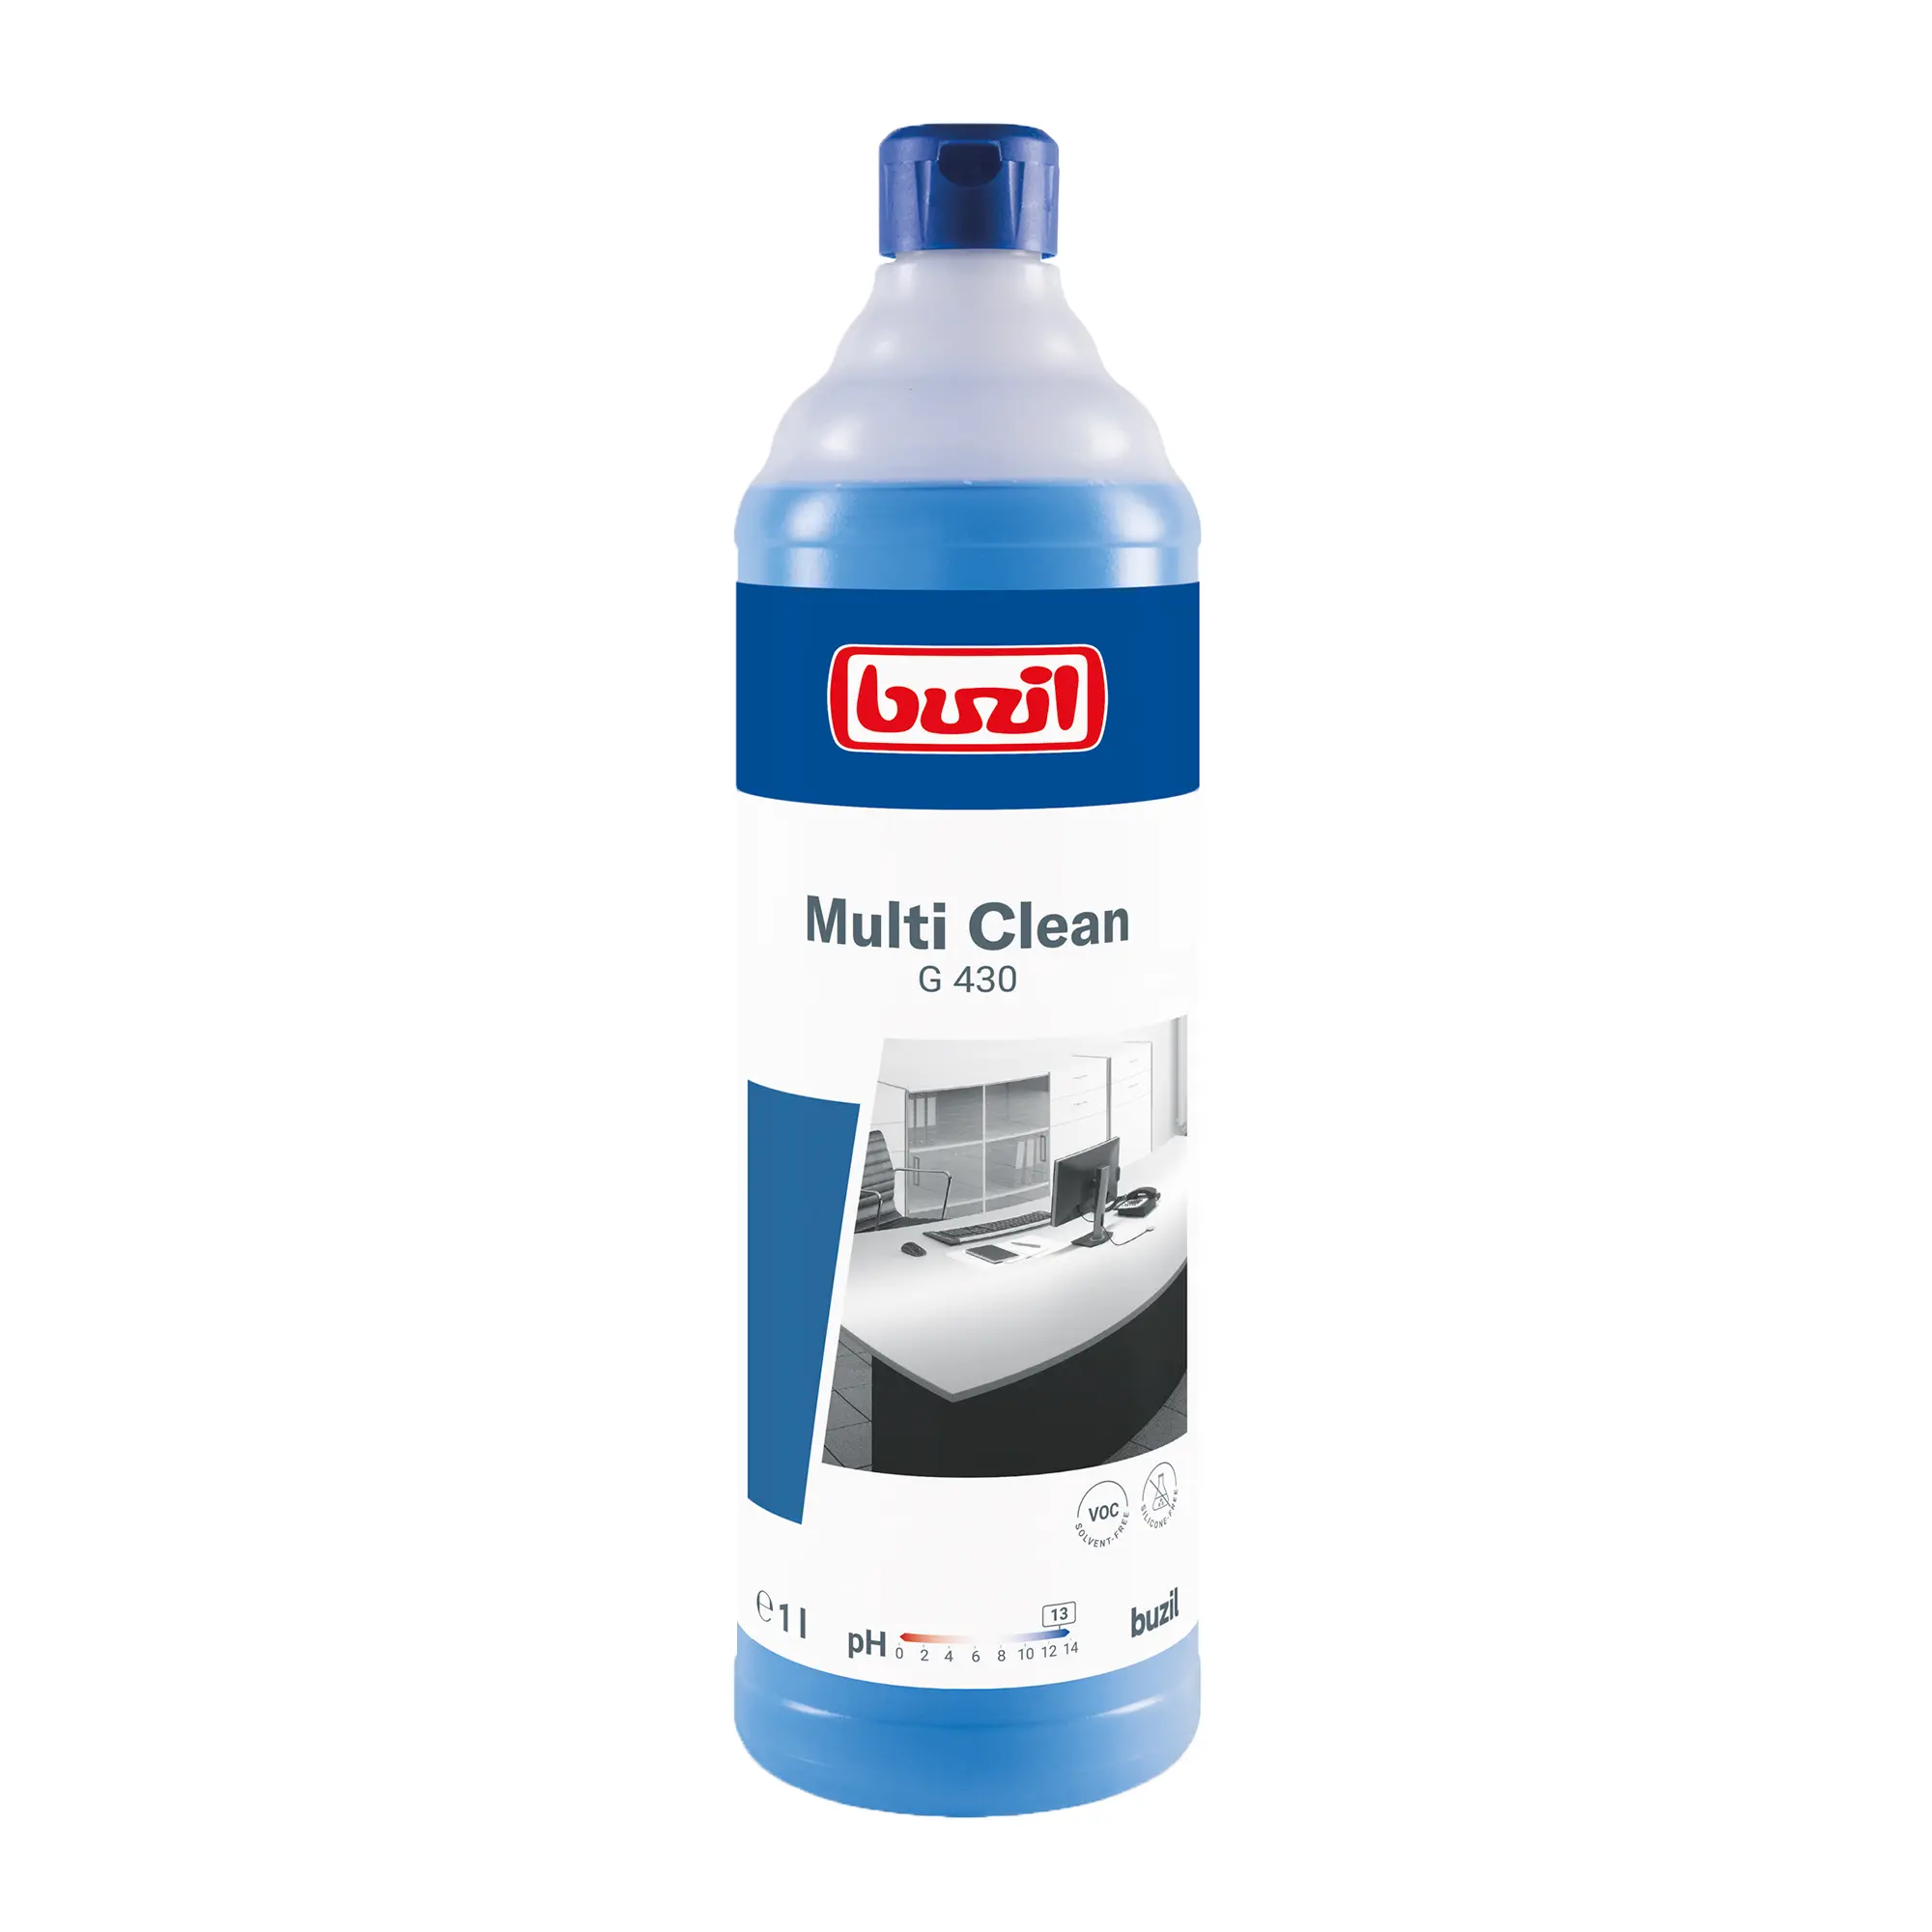 Buzil Multi Clean G430 alkalischer Aktivreiniger